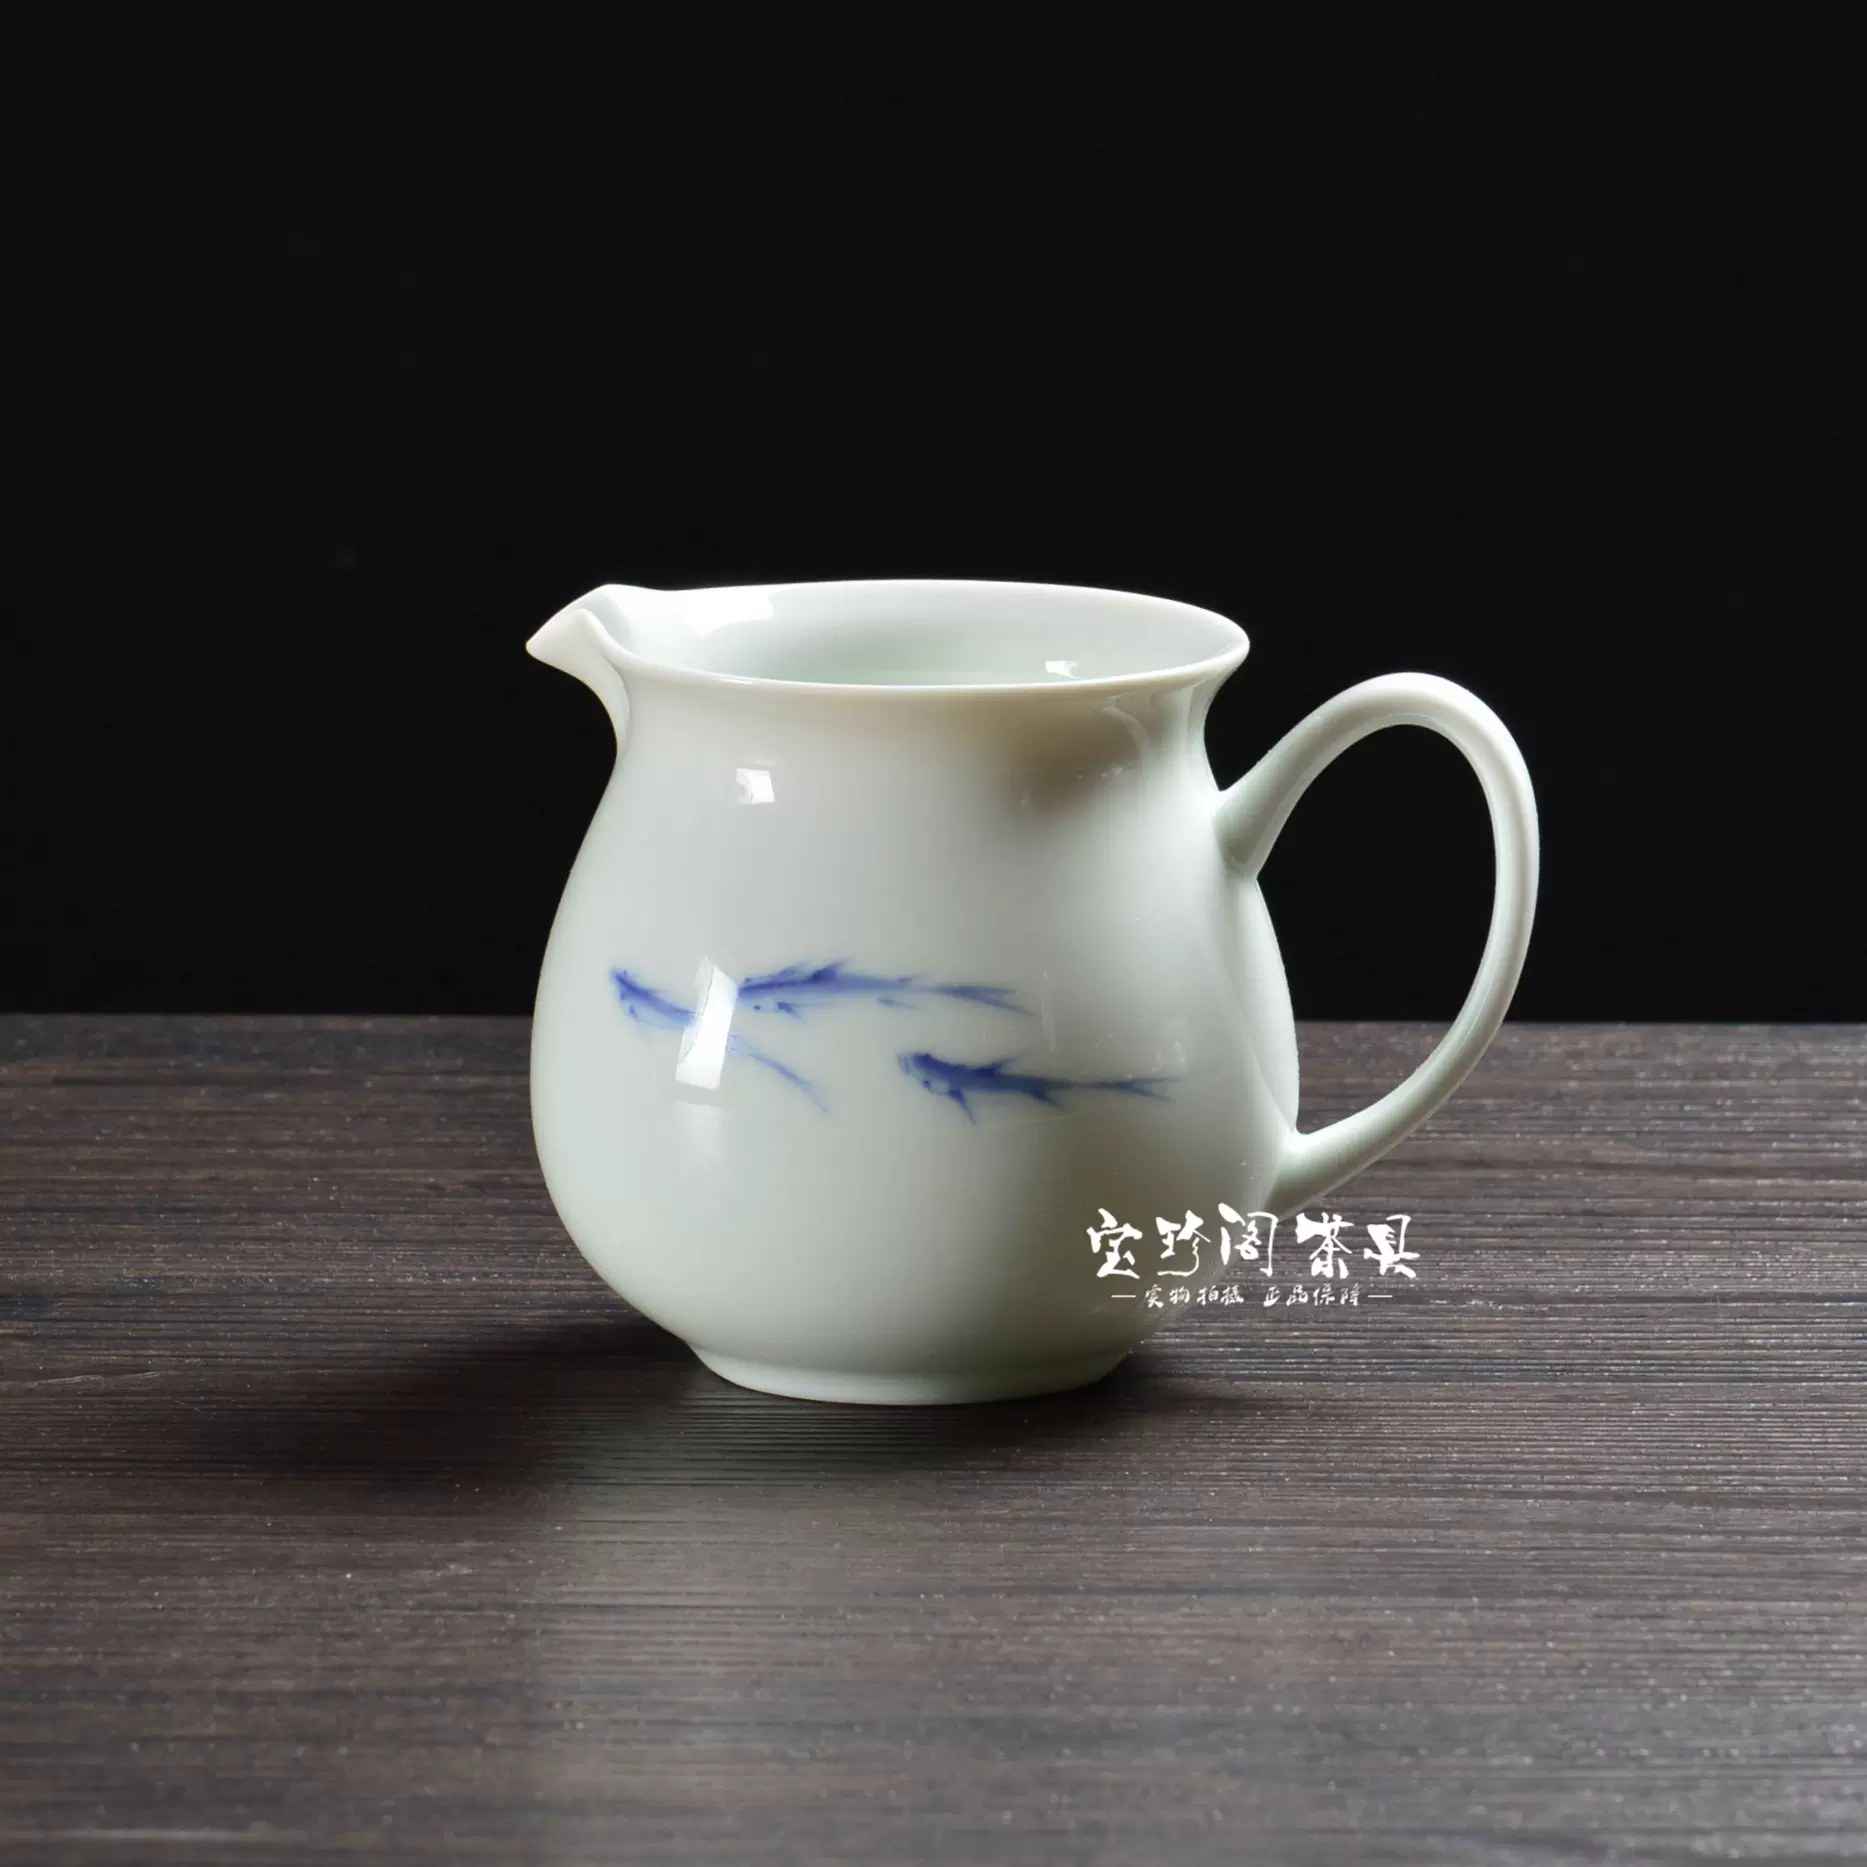 台湾风清堂青花鱼戏公道杯分茶器分茶杯子陶瓷匀杯公杯陶瓷茶具-Taobao